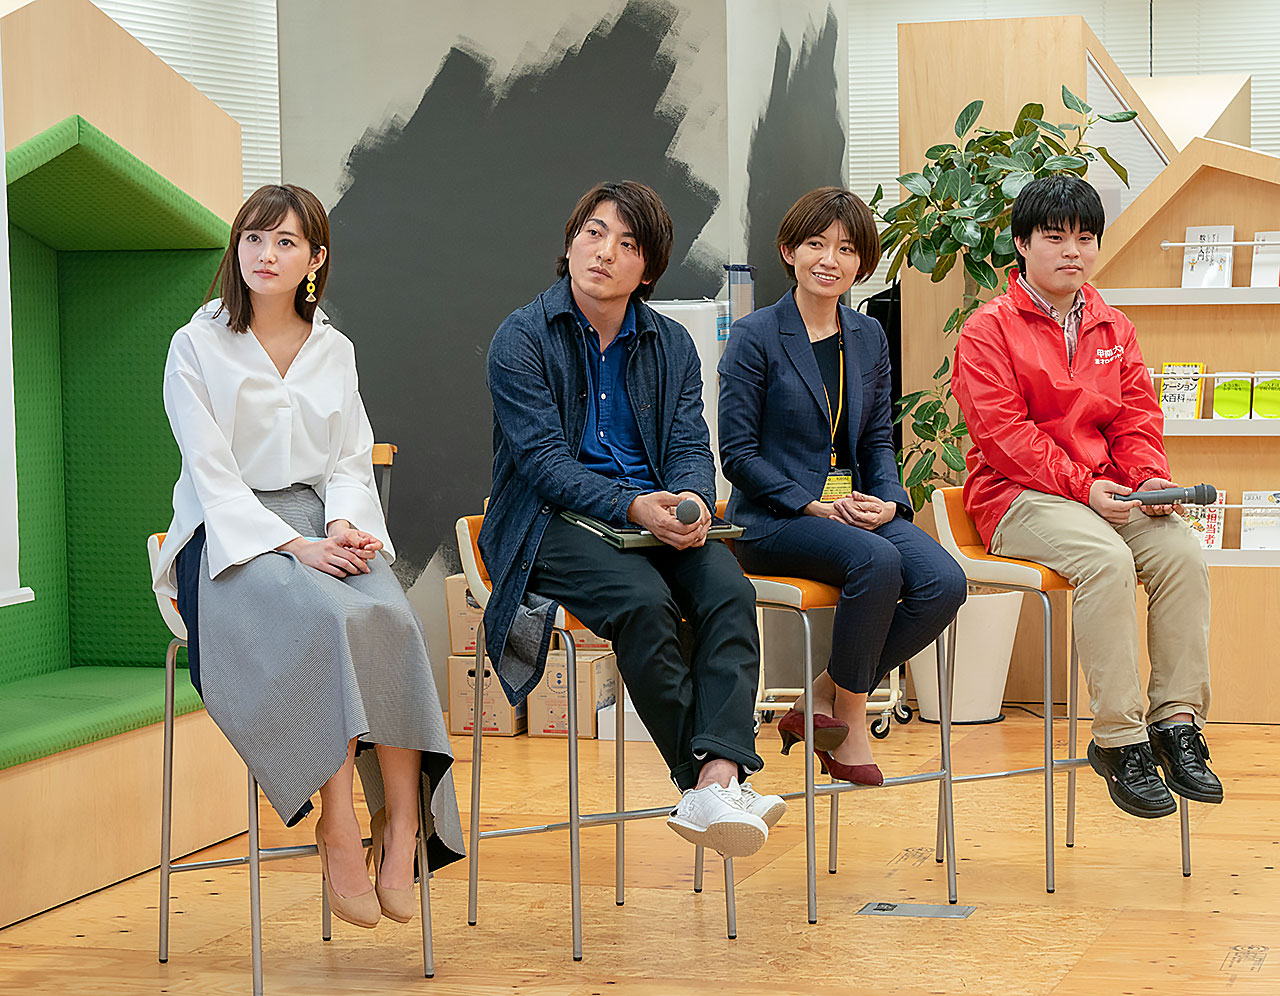 写真左から、上条百里奈さん、登嶋健太さん、黒田麻衣子さん、原口和貴さん